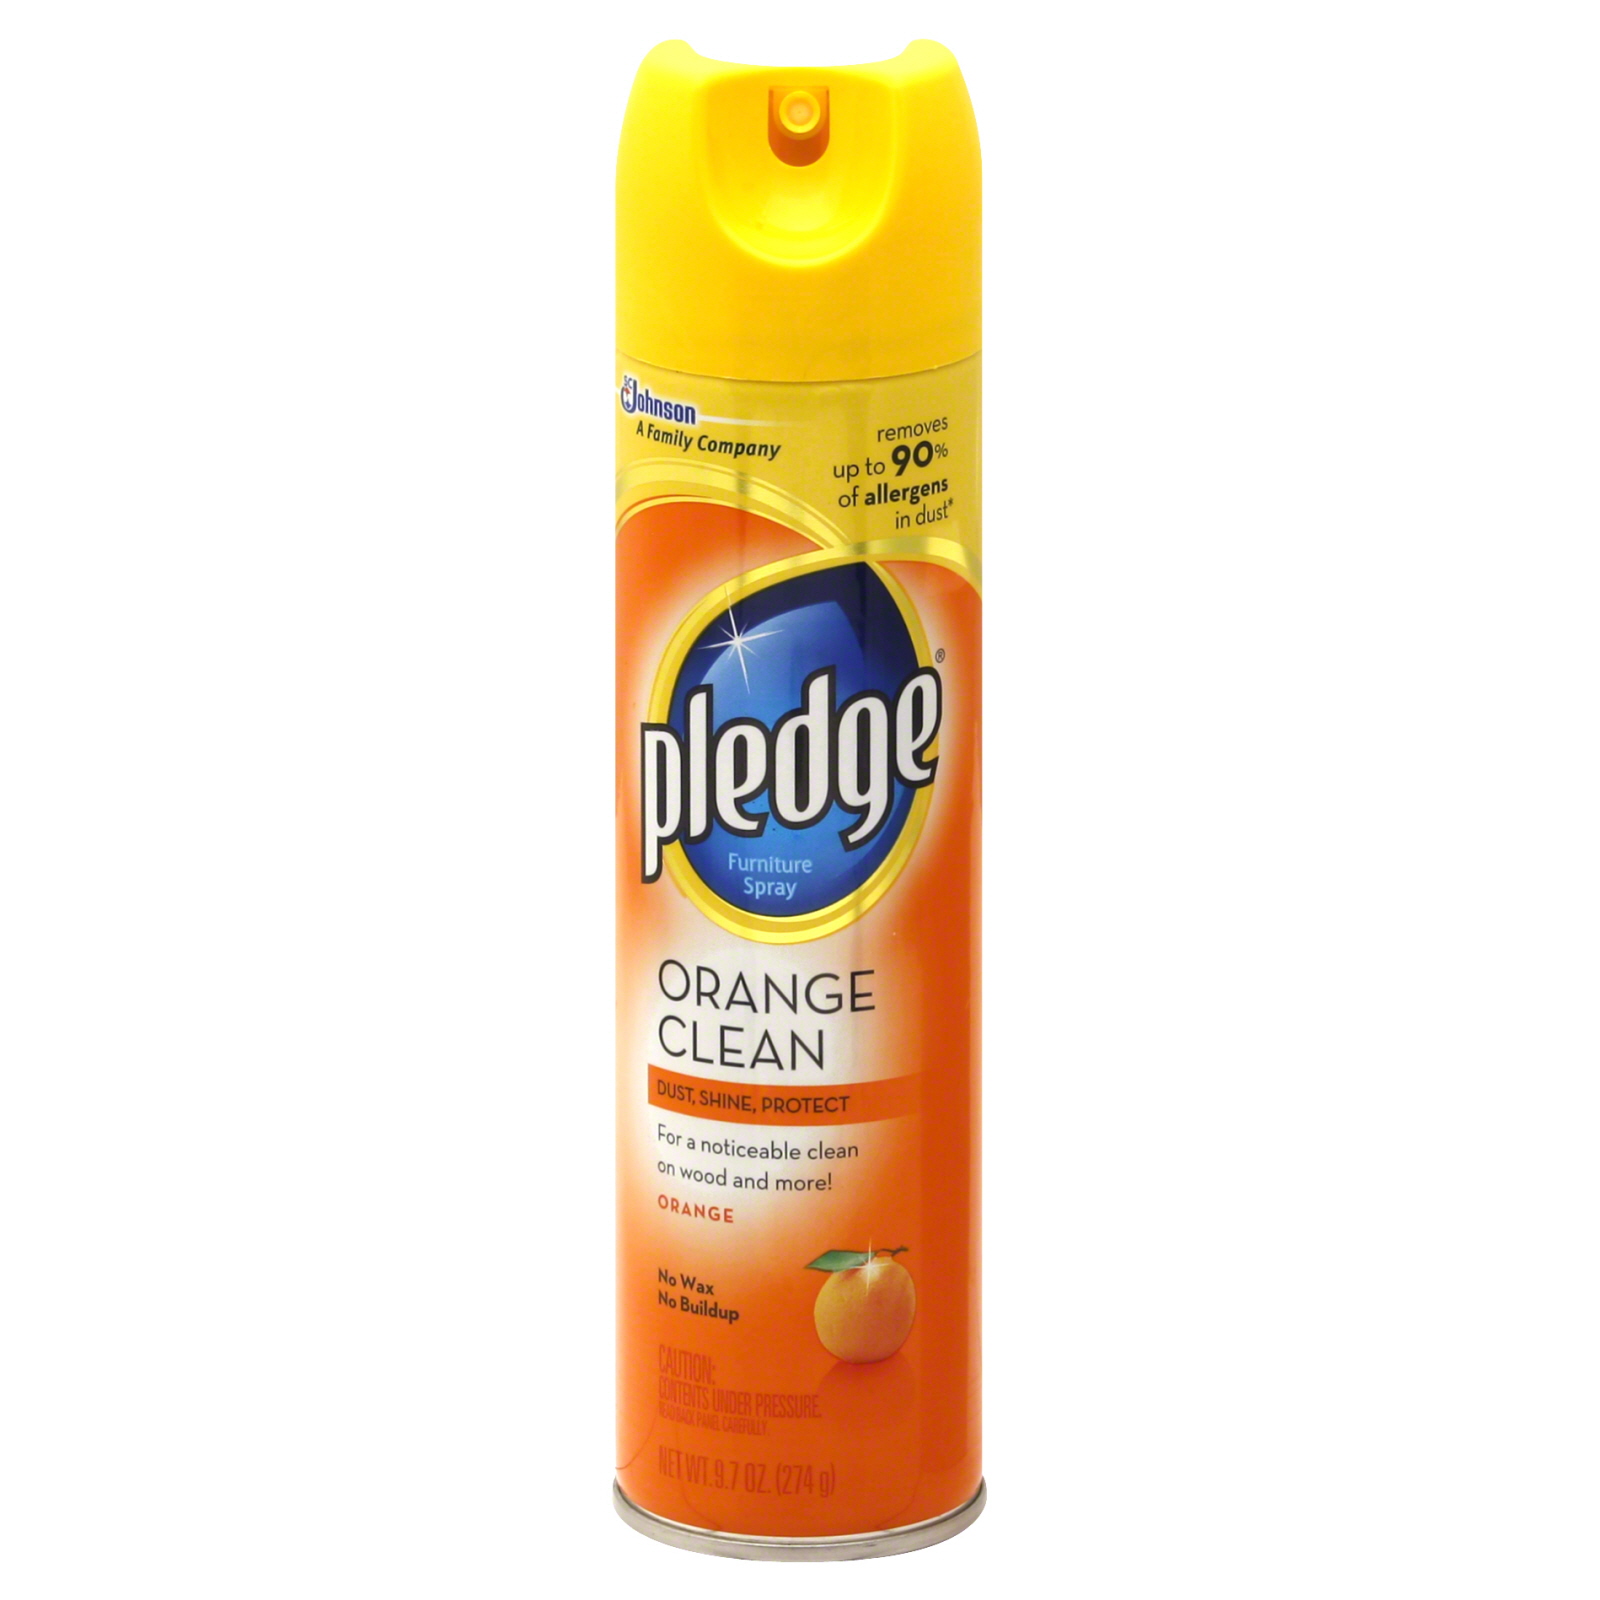 Pledge Furniture Spray, Orange Clean, 9.7 oz (274 g)